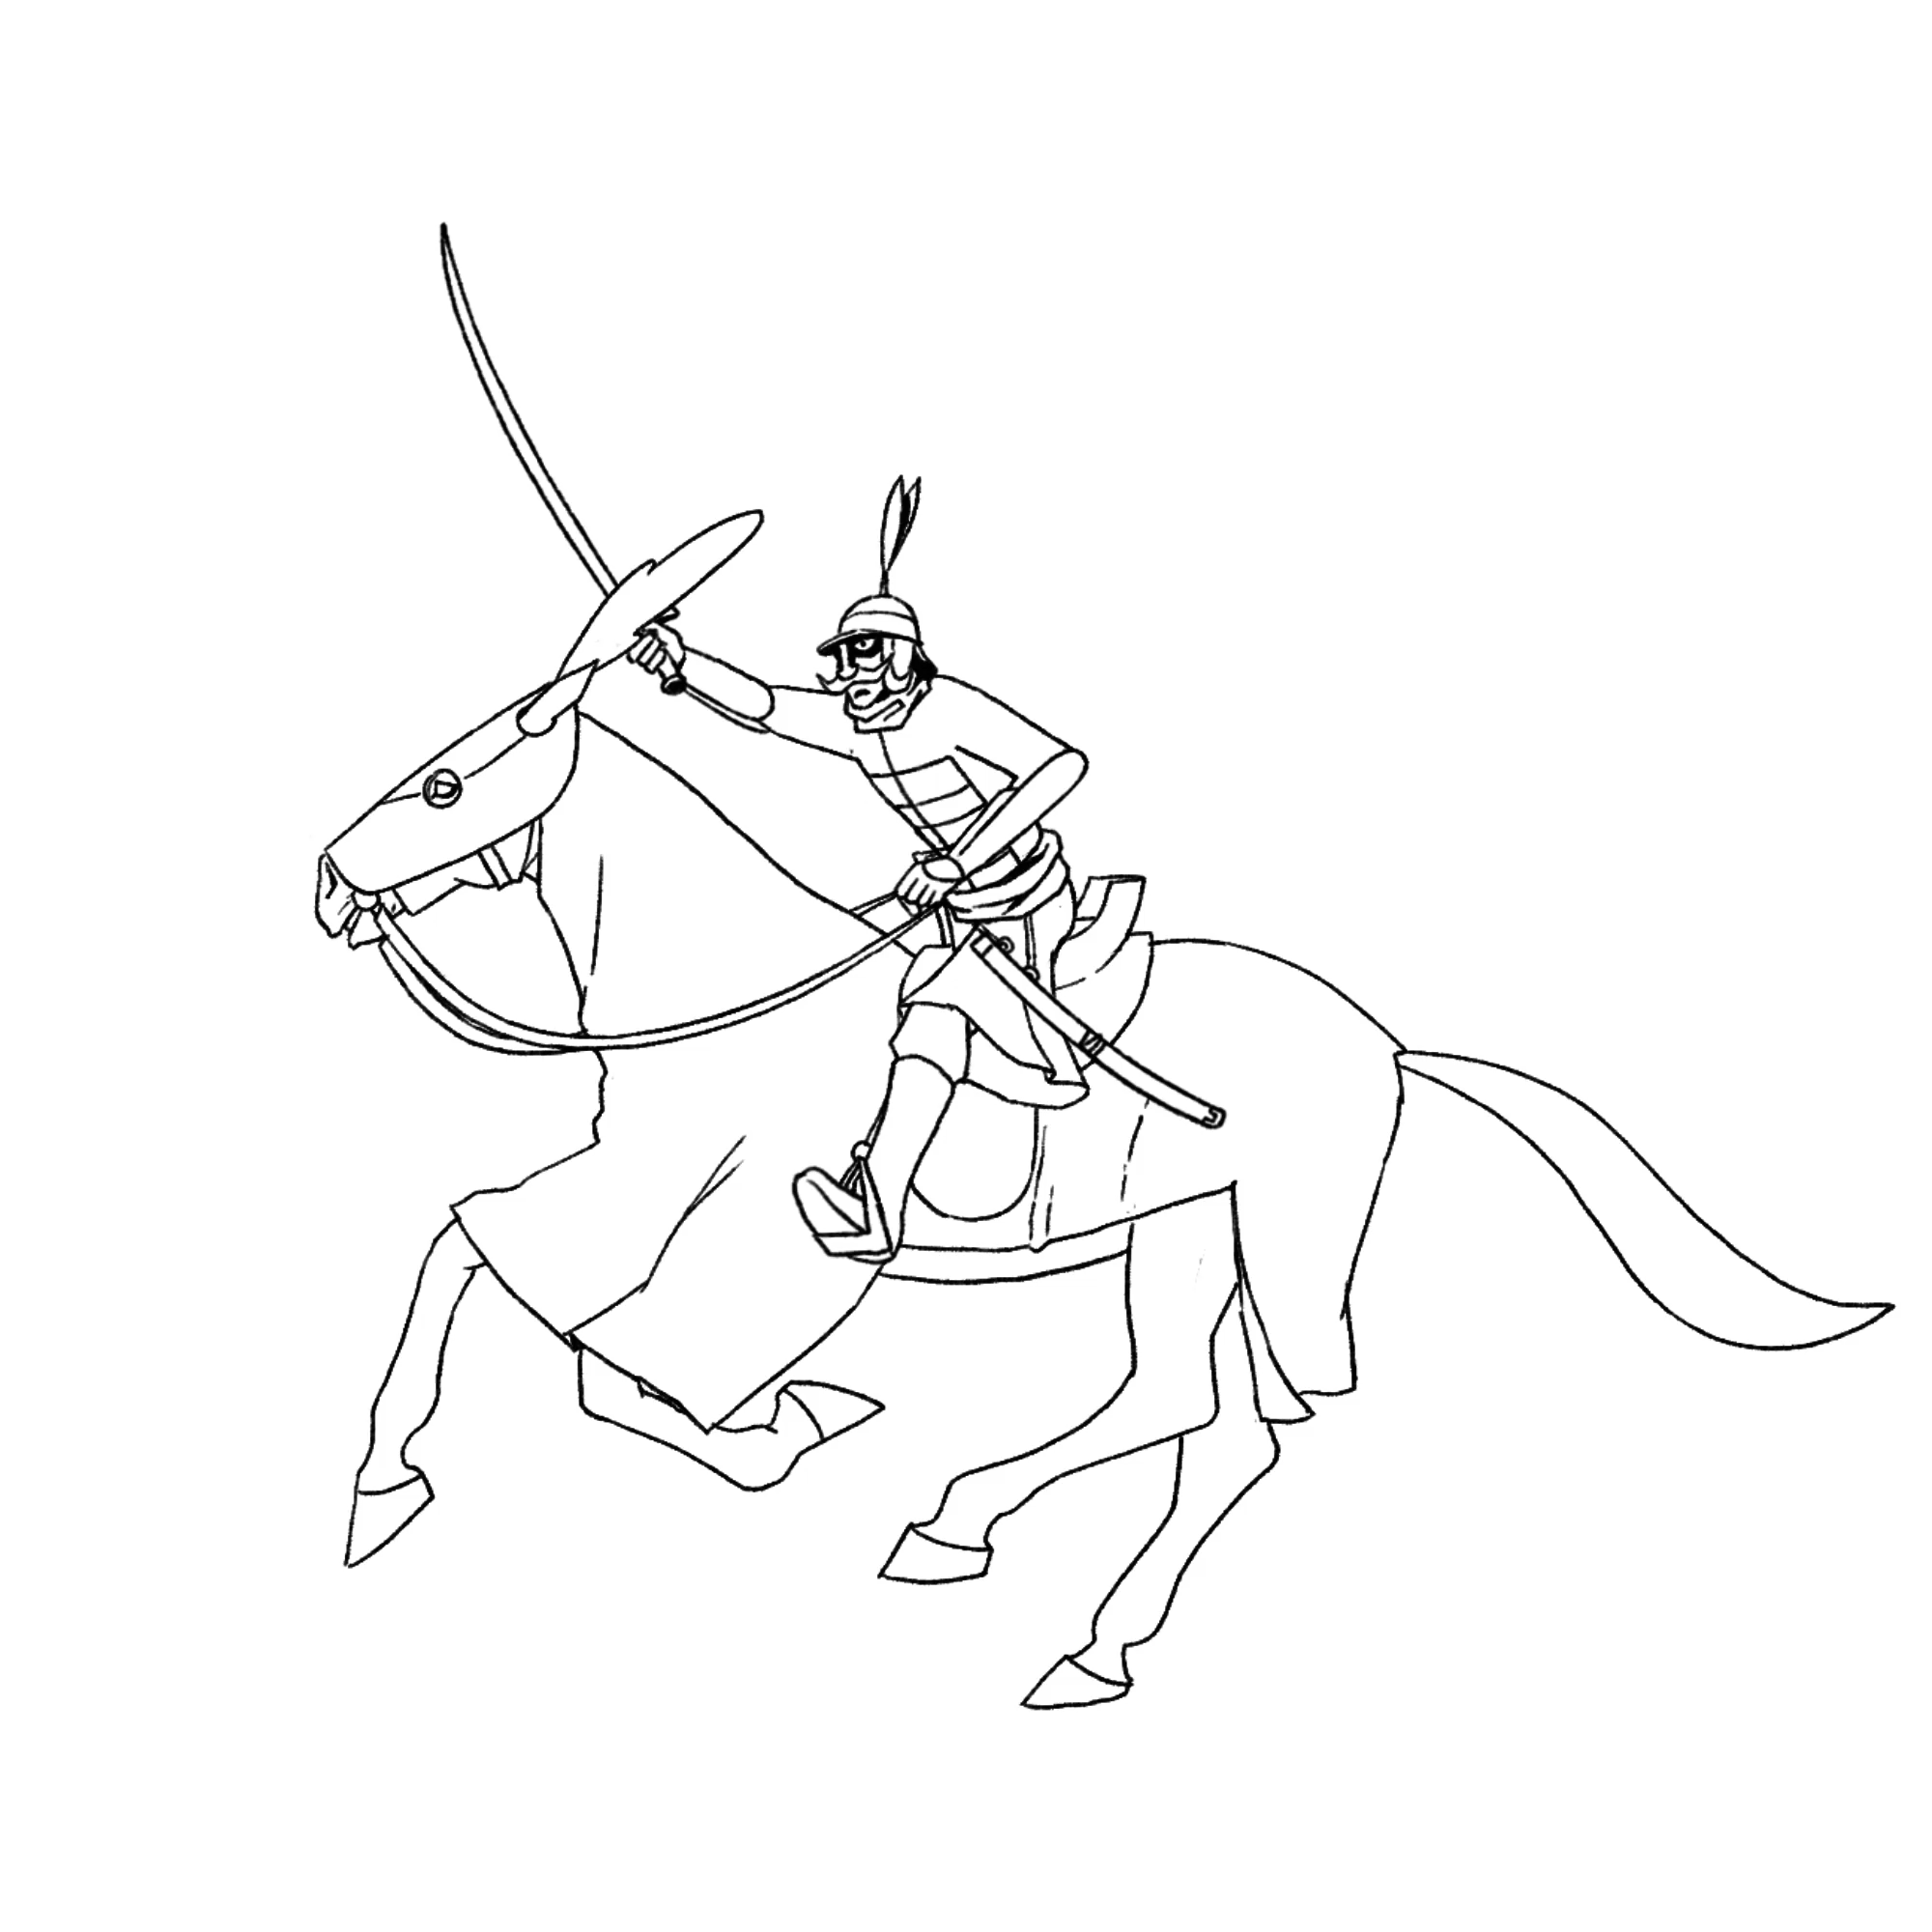 1_Mughal Cavalry_2_mansabdar_1.gif